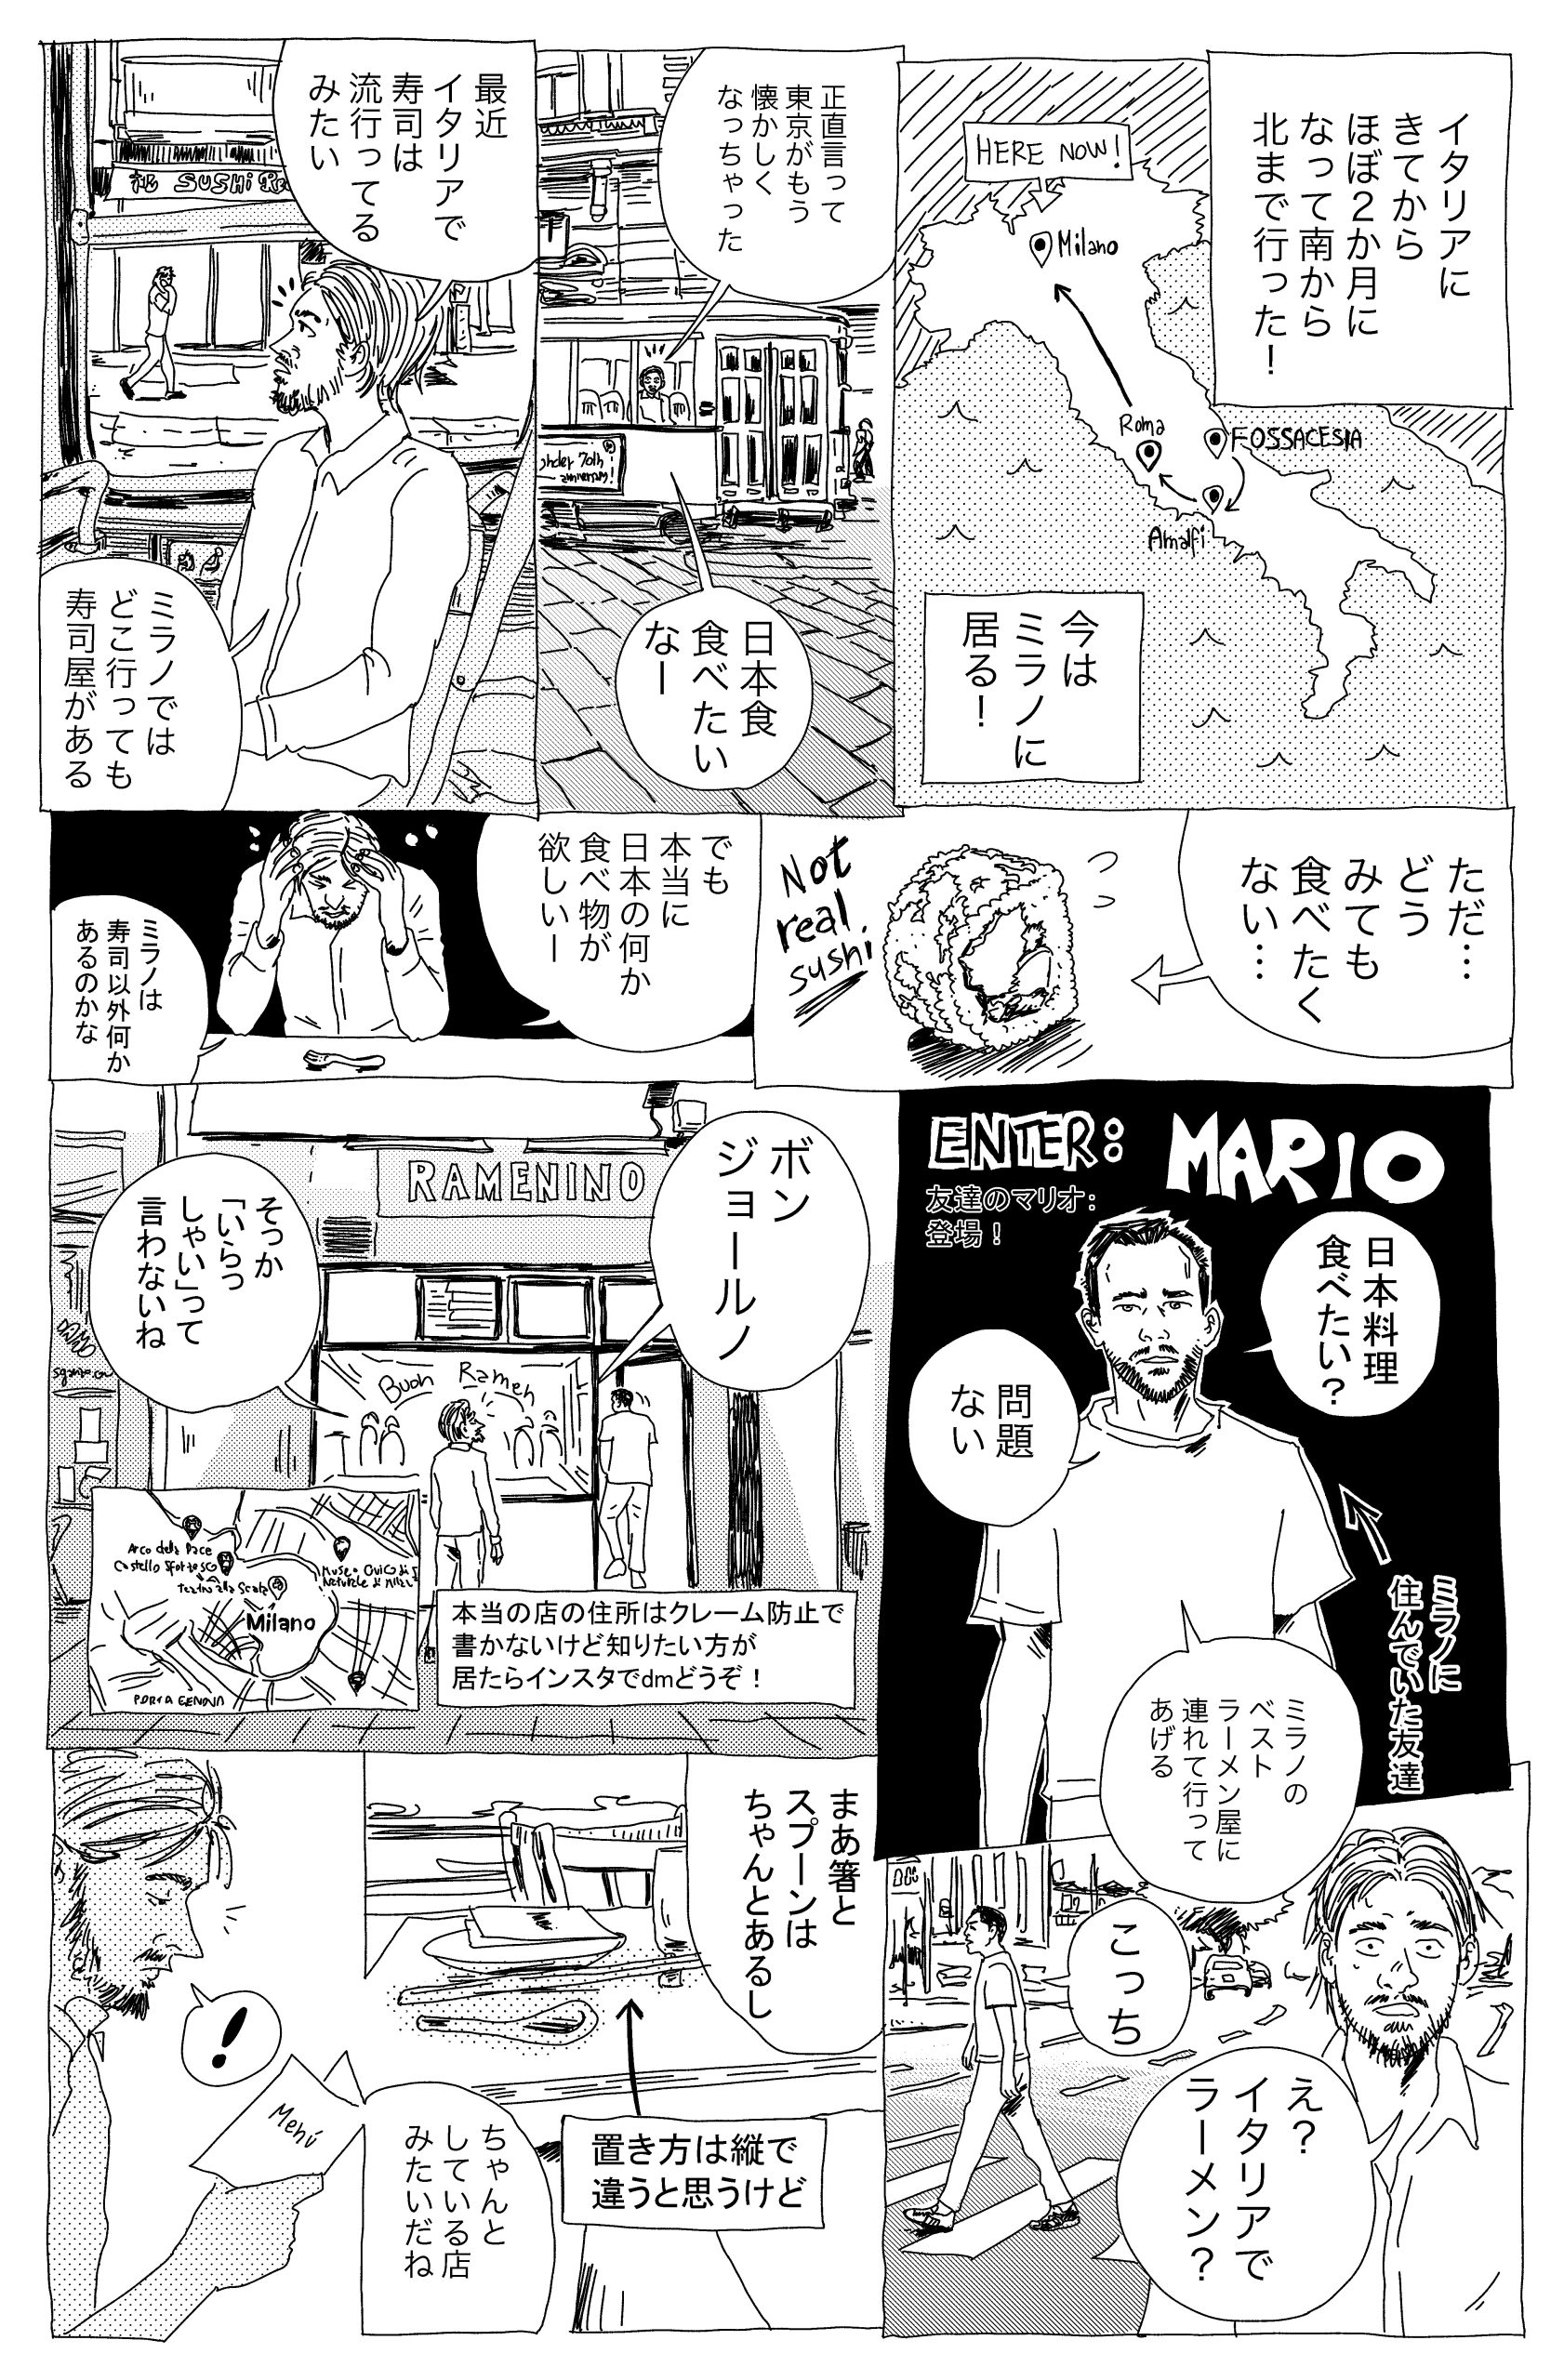 ミラノで人気のラーメン店はおいしい？　漫画連載：イタリア人漫画家・ペッペの日本カルチャー体験記 Vol.6